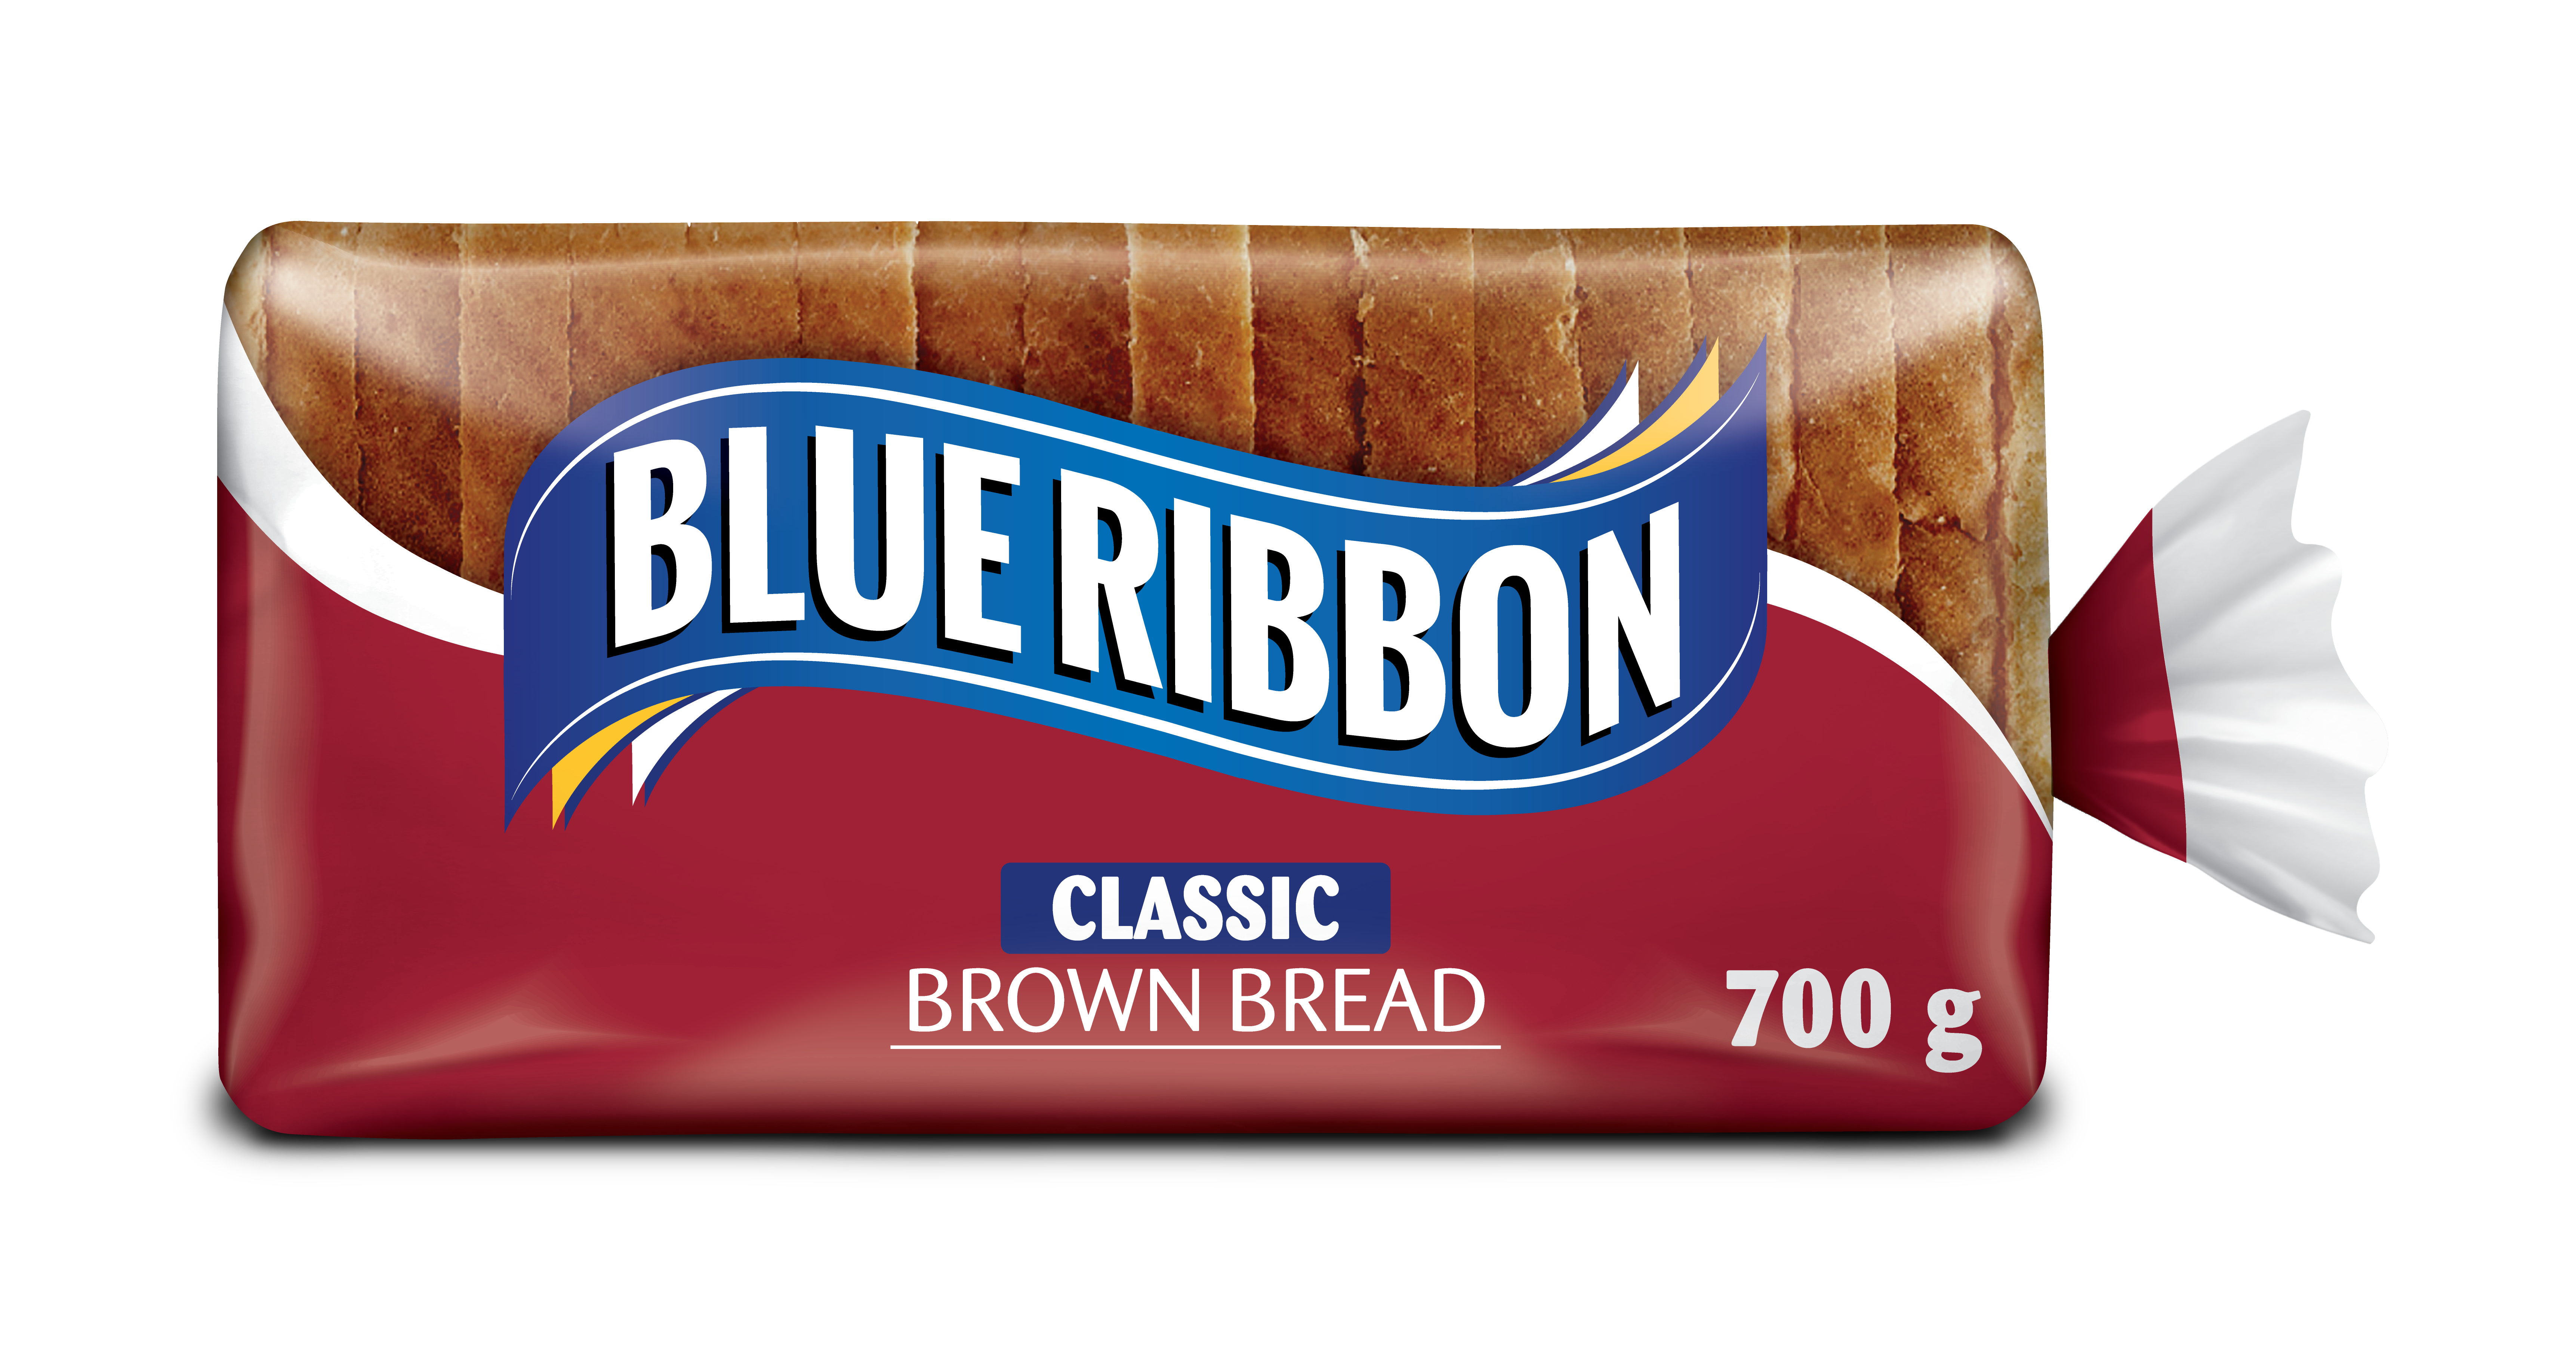 Classic Brown Bread, 700g